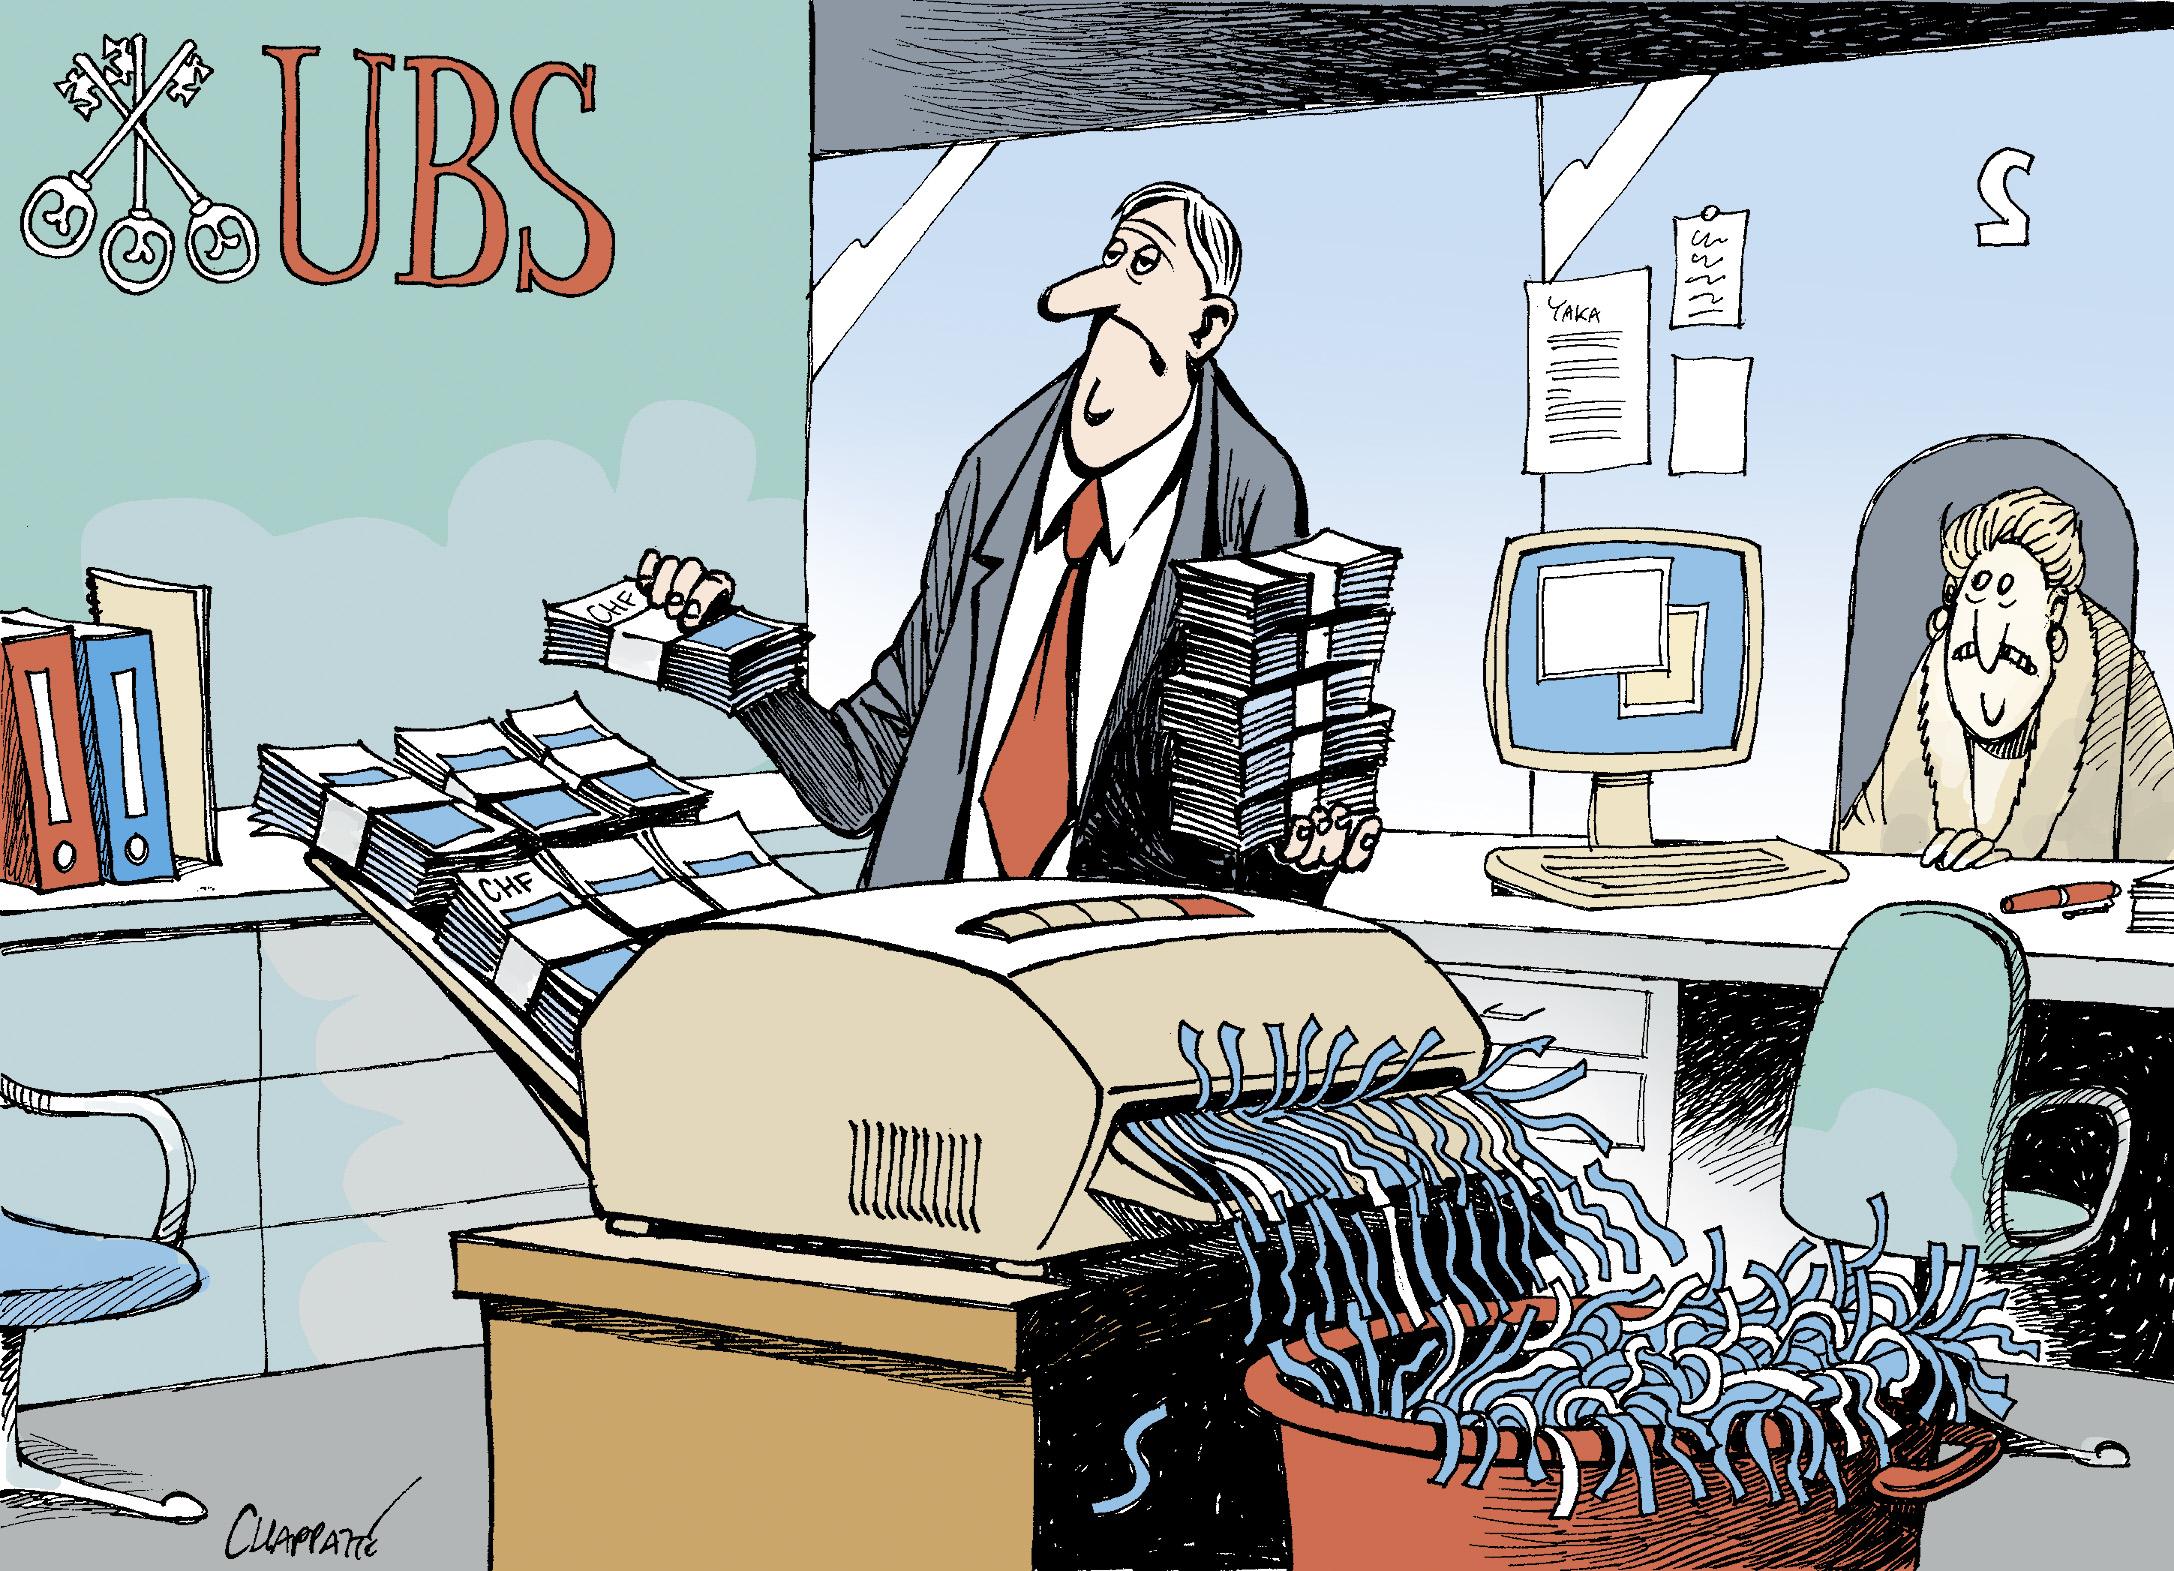 Subprime: UBS loses billions